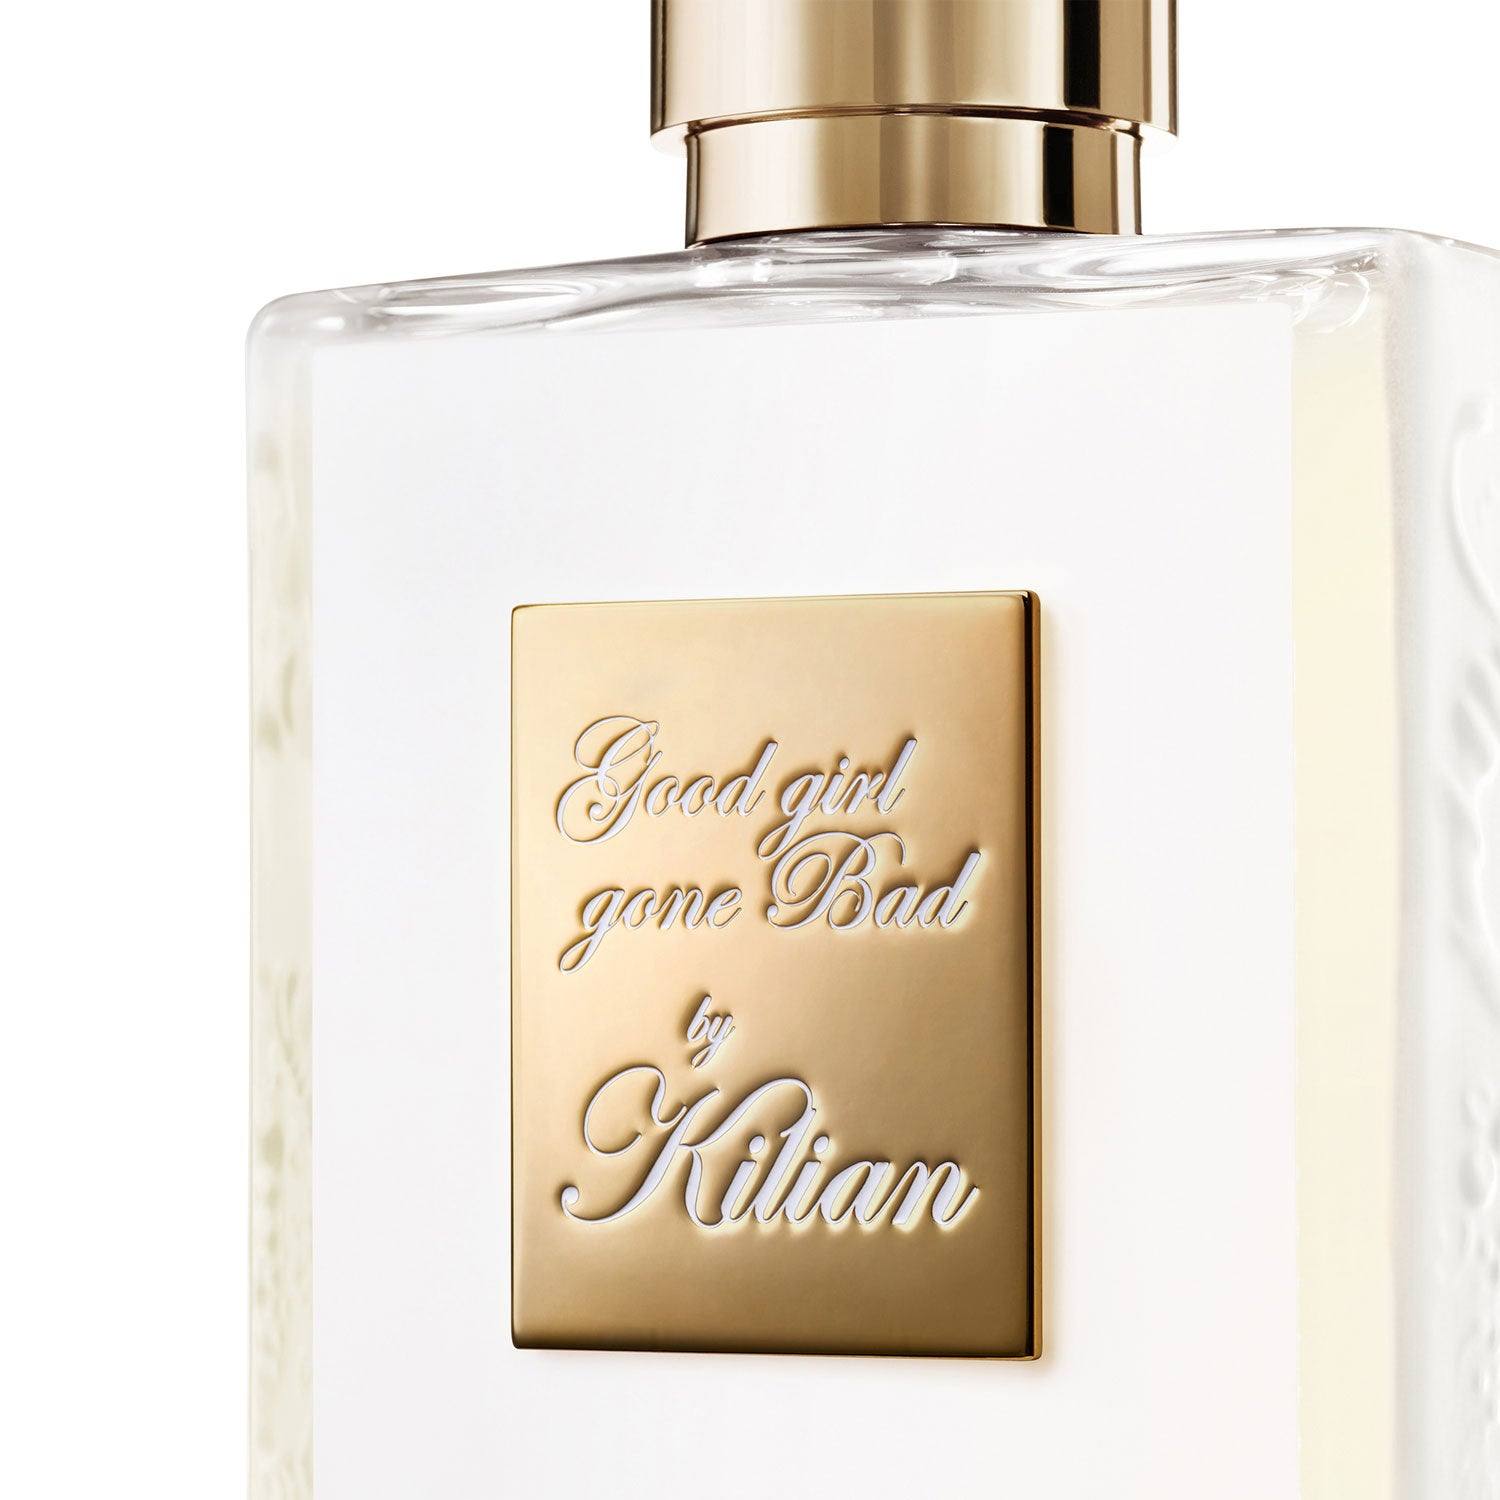 Kilian Good Girl Gone Bad Eau de Parfum 0.25 fl oz/7.5 ml Travel Spray